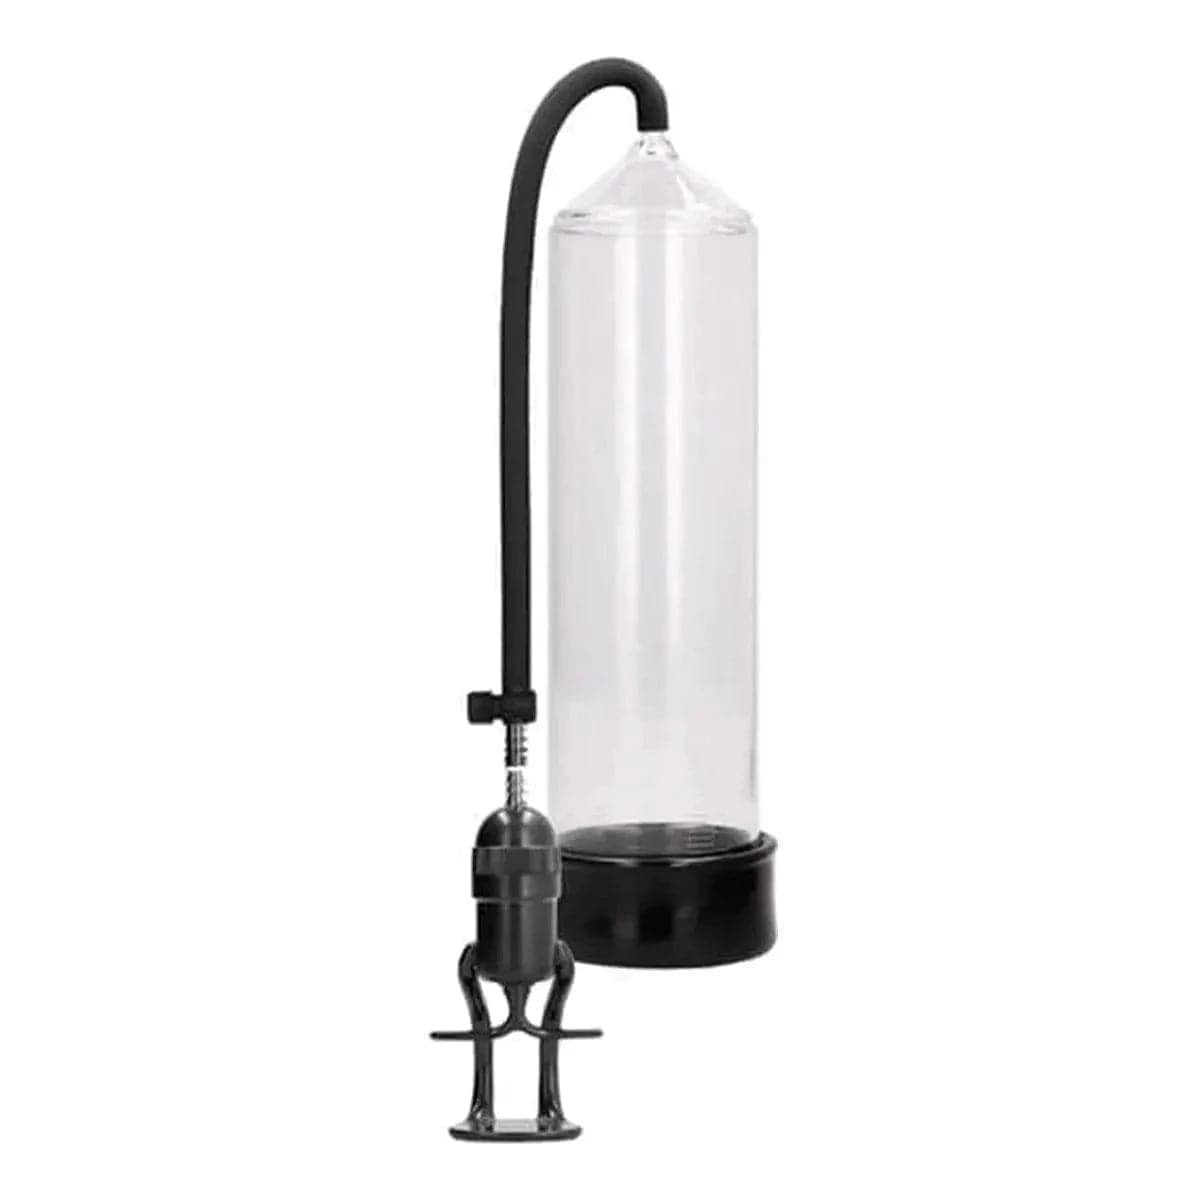 Deluxe Beginner Pump Transparente, Sucção Muito Forte, 23cm Ø6cm